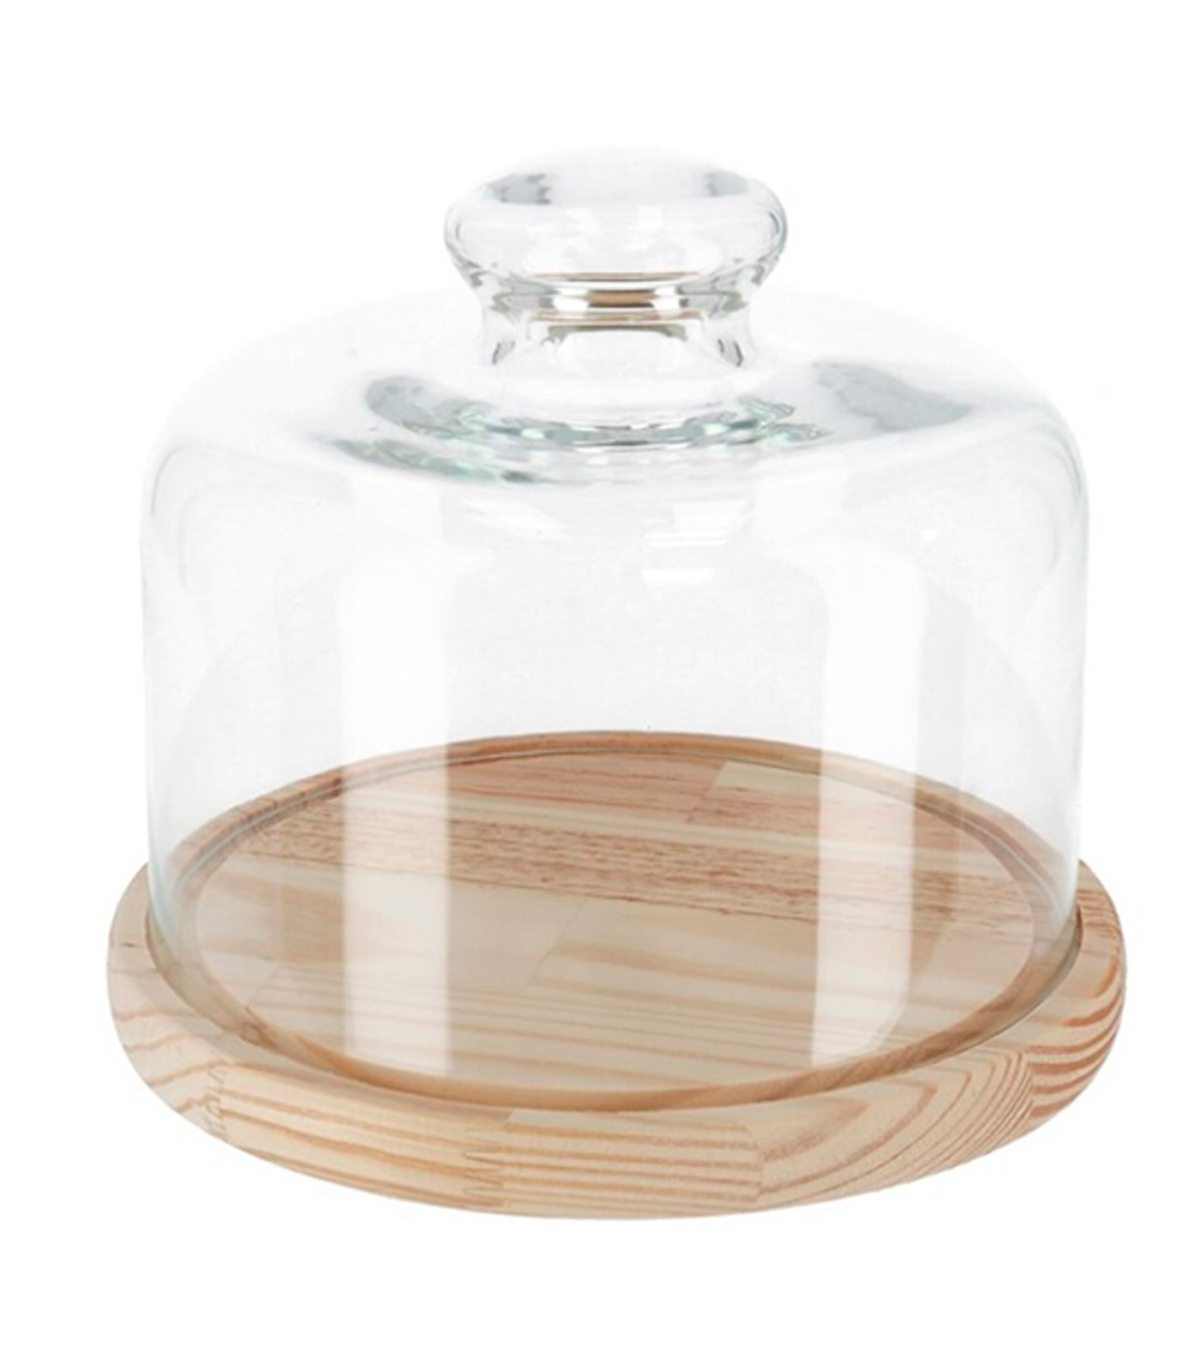 Quesera redonda con tapa de cristal y base de madera 20 x 10 cm. Recipiente  para conservar frescos quesos o embutidos